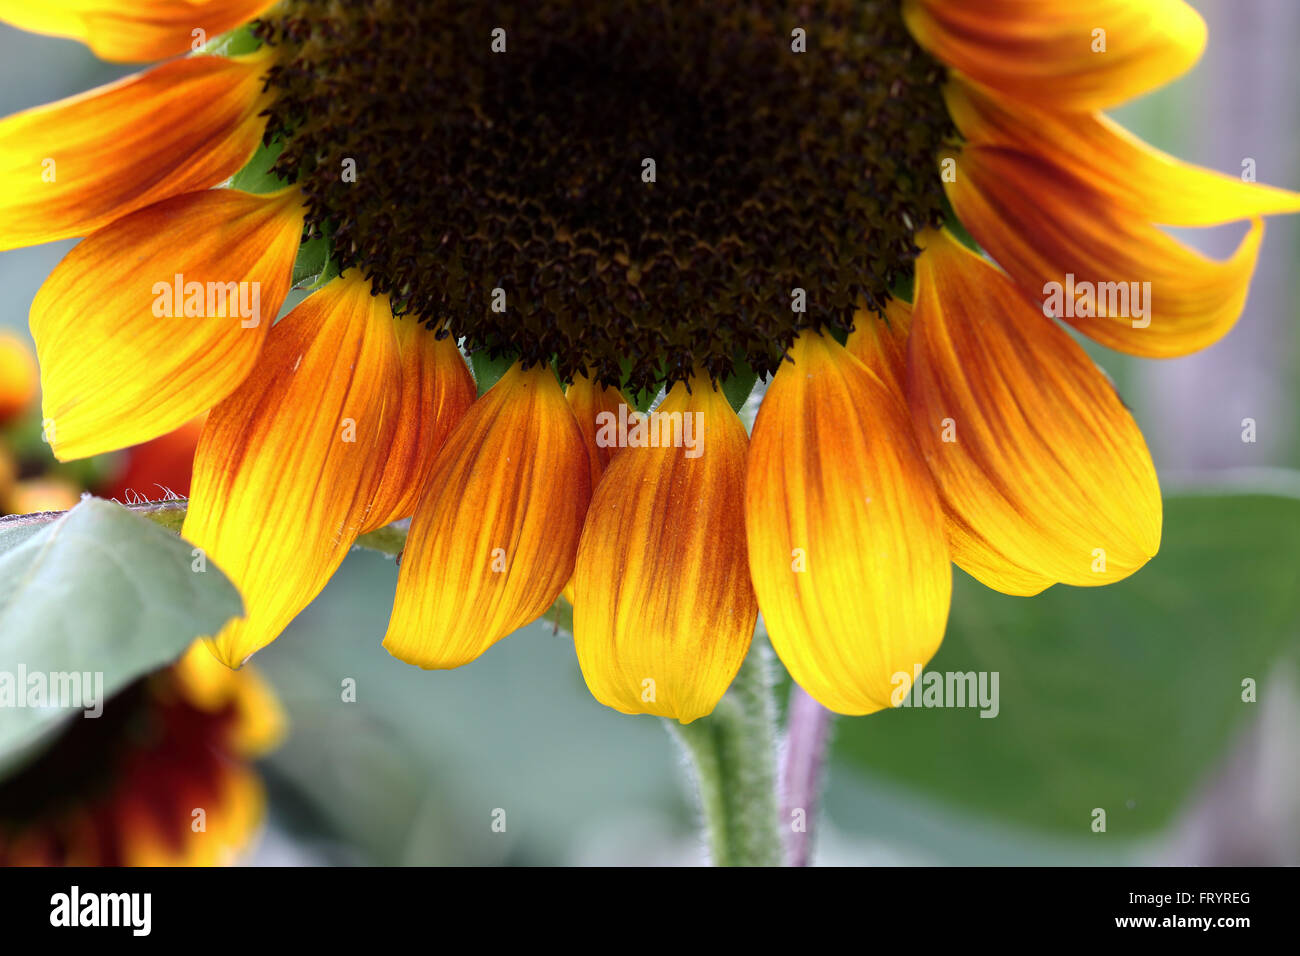 Helianthus Annuus oder bekannt als Golden Prominenz F1 Sonnenblume Stockfoto